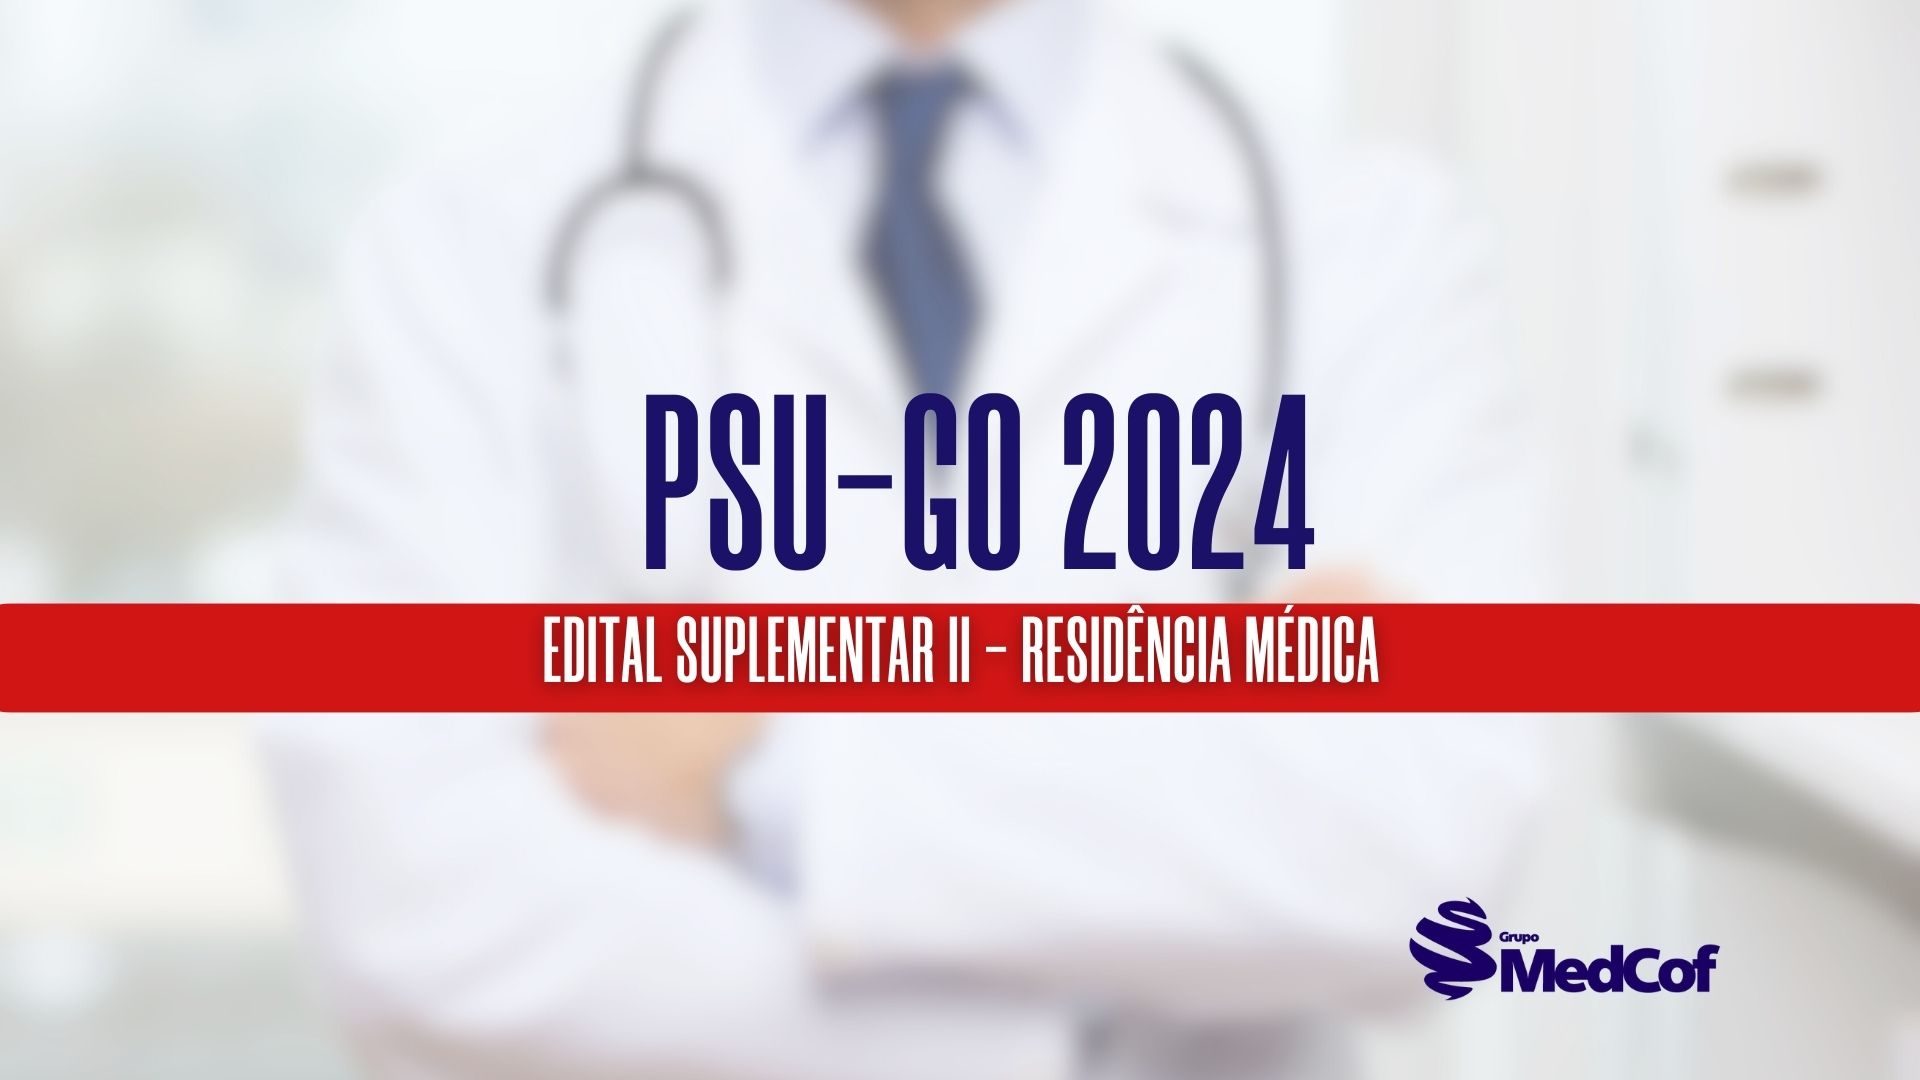 Edital Suplementar II PSU - GO: confira os hospitais e o cronograma de seleção para Residência Médica 2024